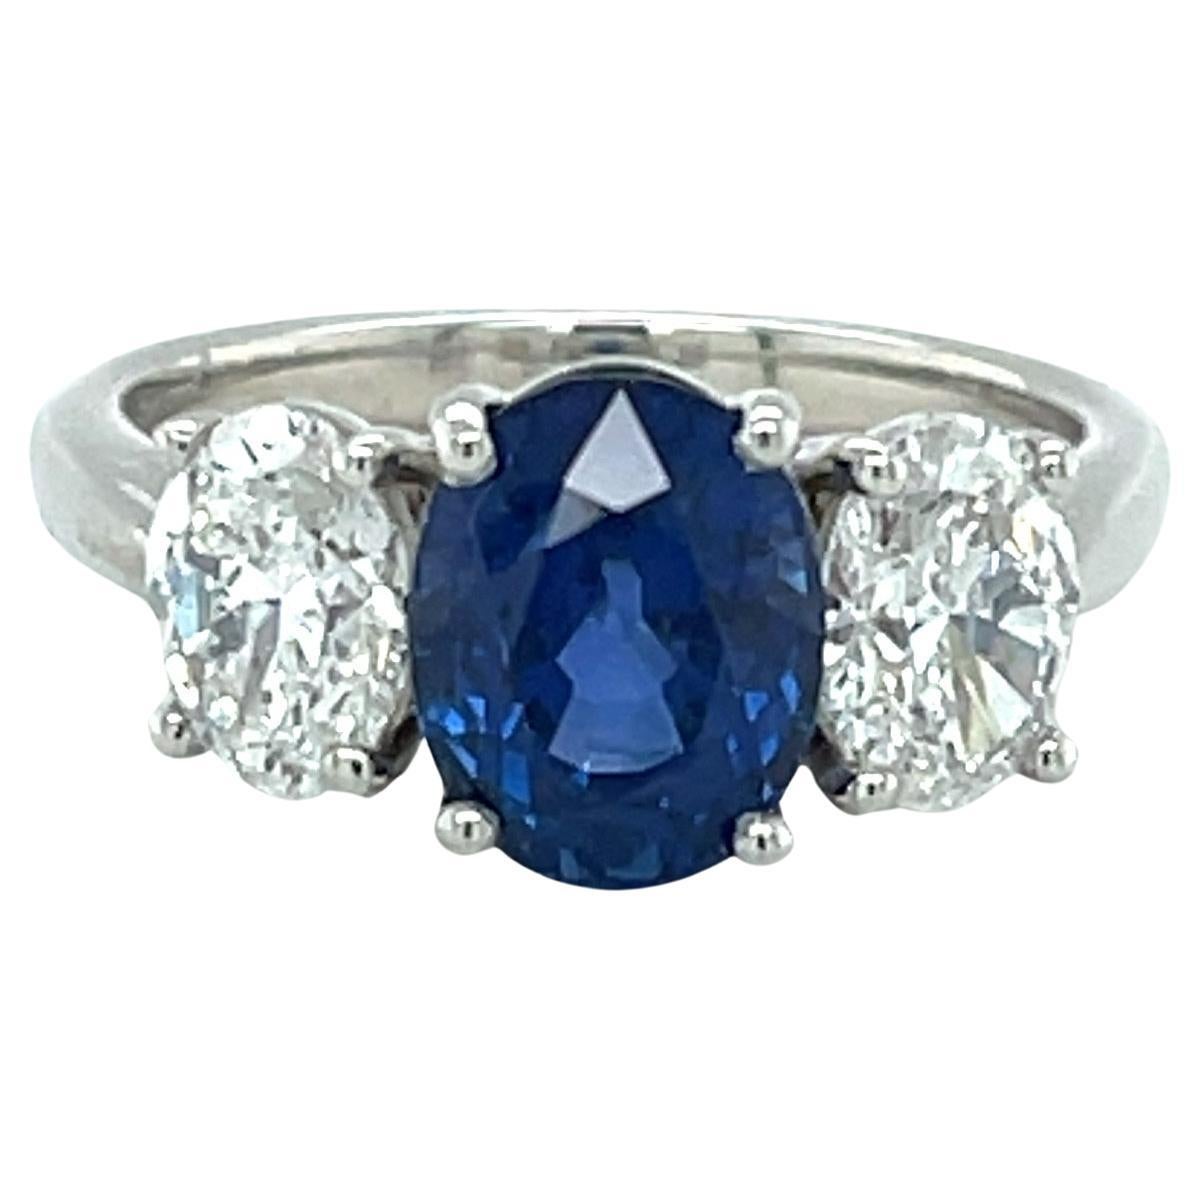 Dieser wunderschöne blaue Saphir- und Diamantring mit drei Steinen enthält einen ovalen Ceylon-Saphir von 3,20 Karat, der vom GIA als unerhitzt zertifiziert wurde. Die meisten Saphire auf dem Markt wurden erhitzt, um diesen satten, leuchtenden